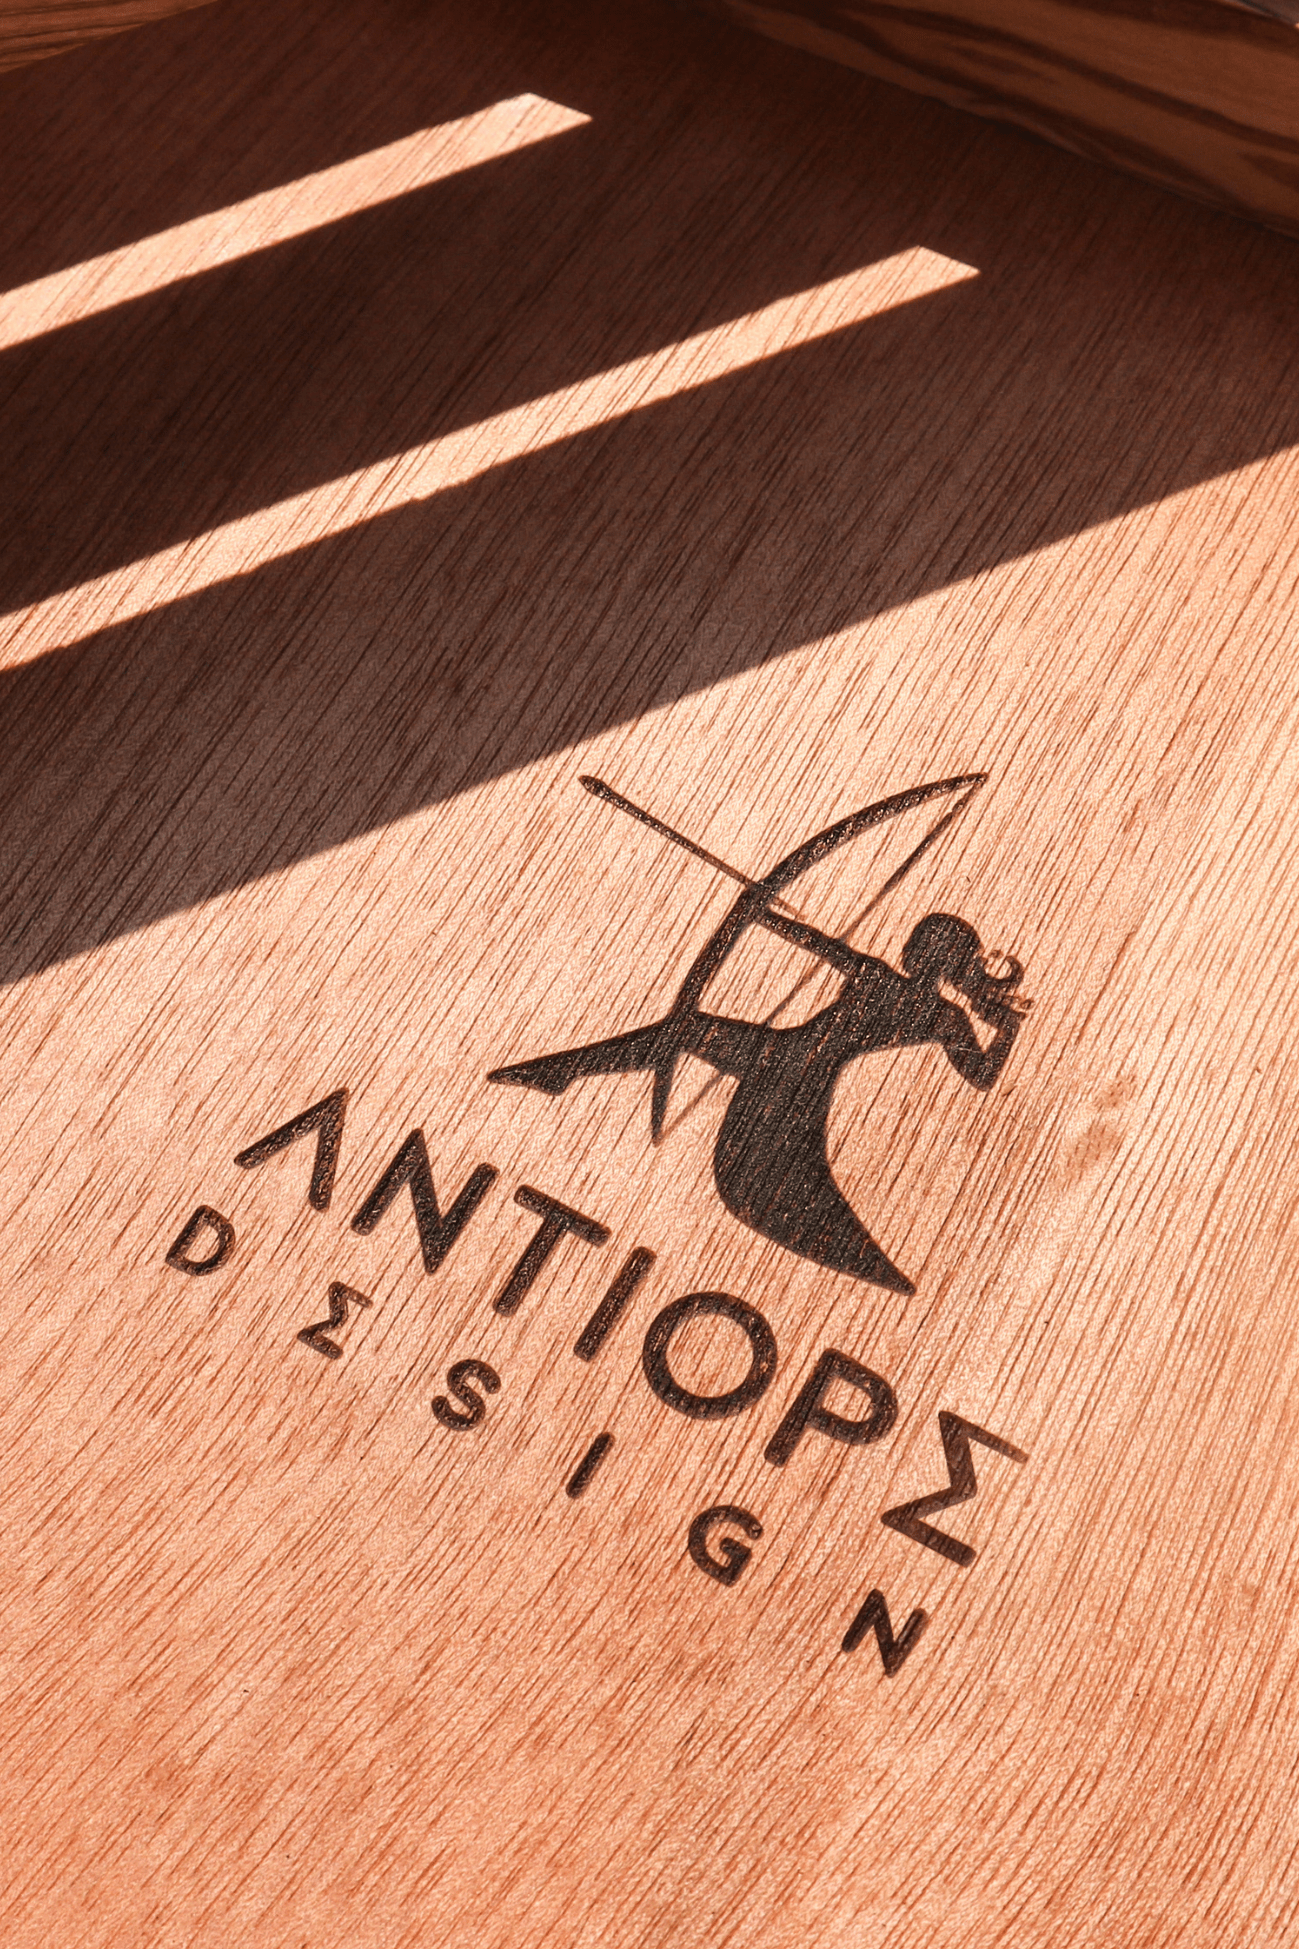 Antiope Design La Bottega dell'Olivo Tagliere per pane in legno d'ulivo Made in Italy